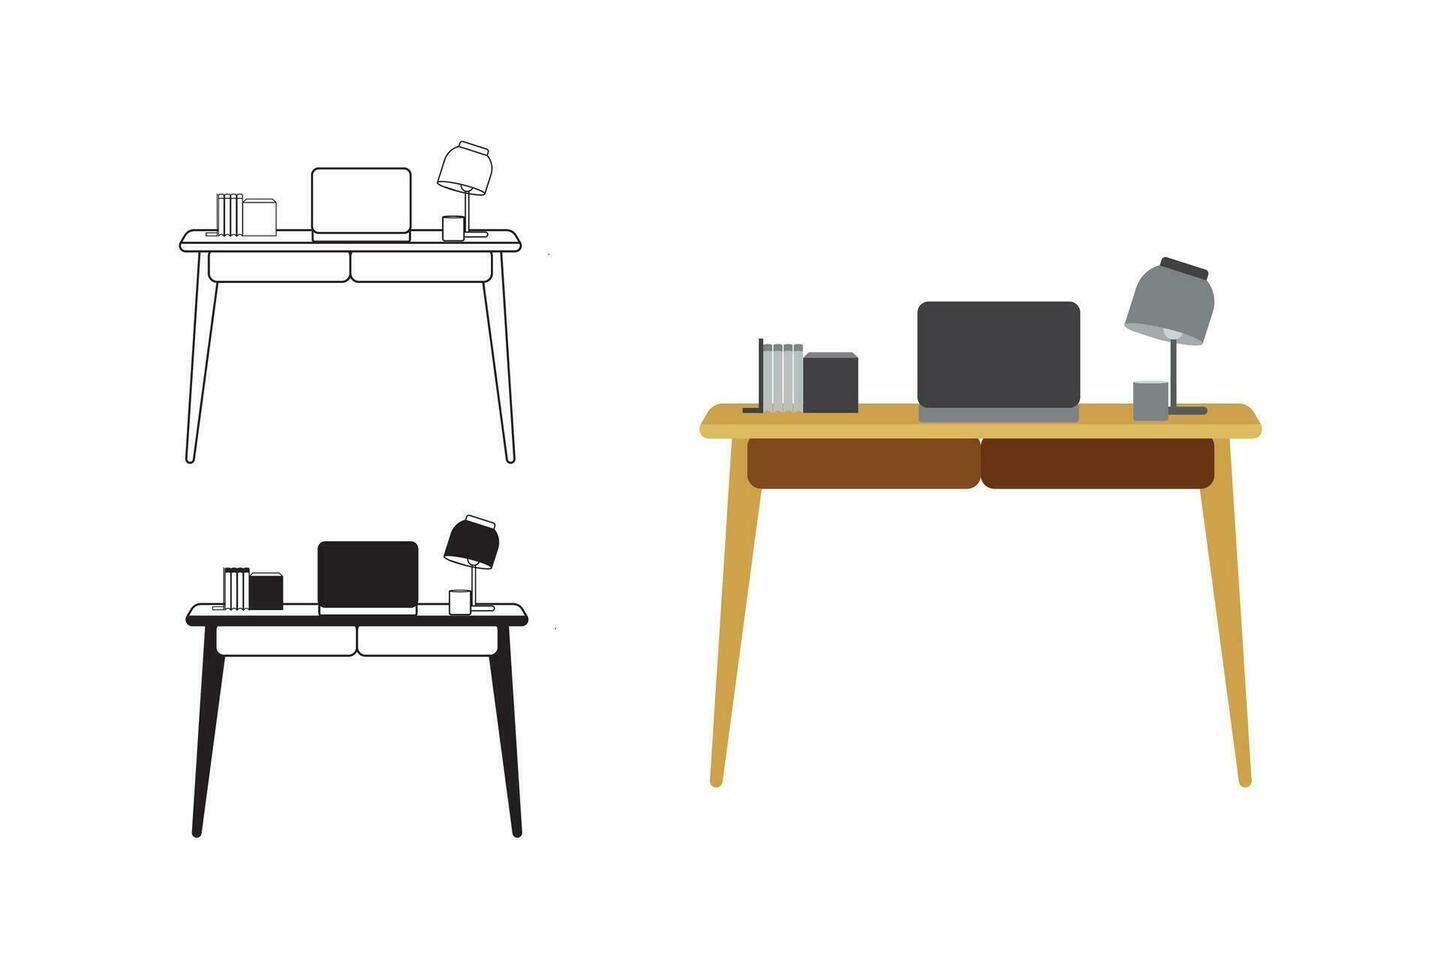 een illustratie van een bedrijf kantoor bureau afgebeeld in lijn kunst stijl, met variaties beschikbaar in beide gevulde vector en kleurrijk vector formaten.